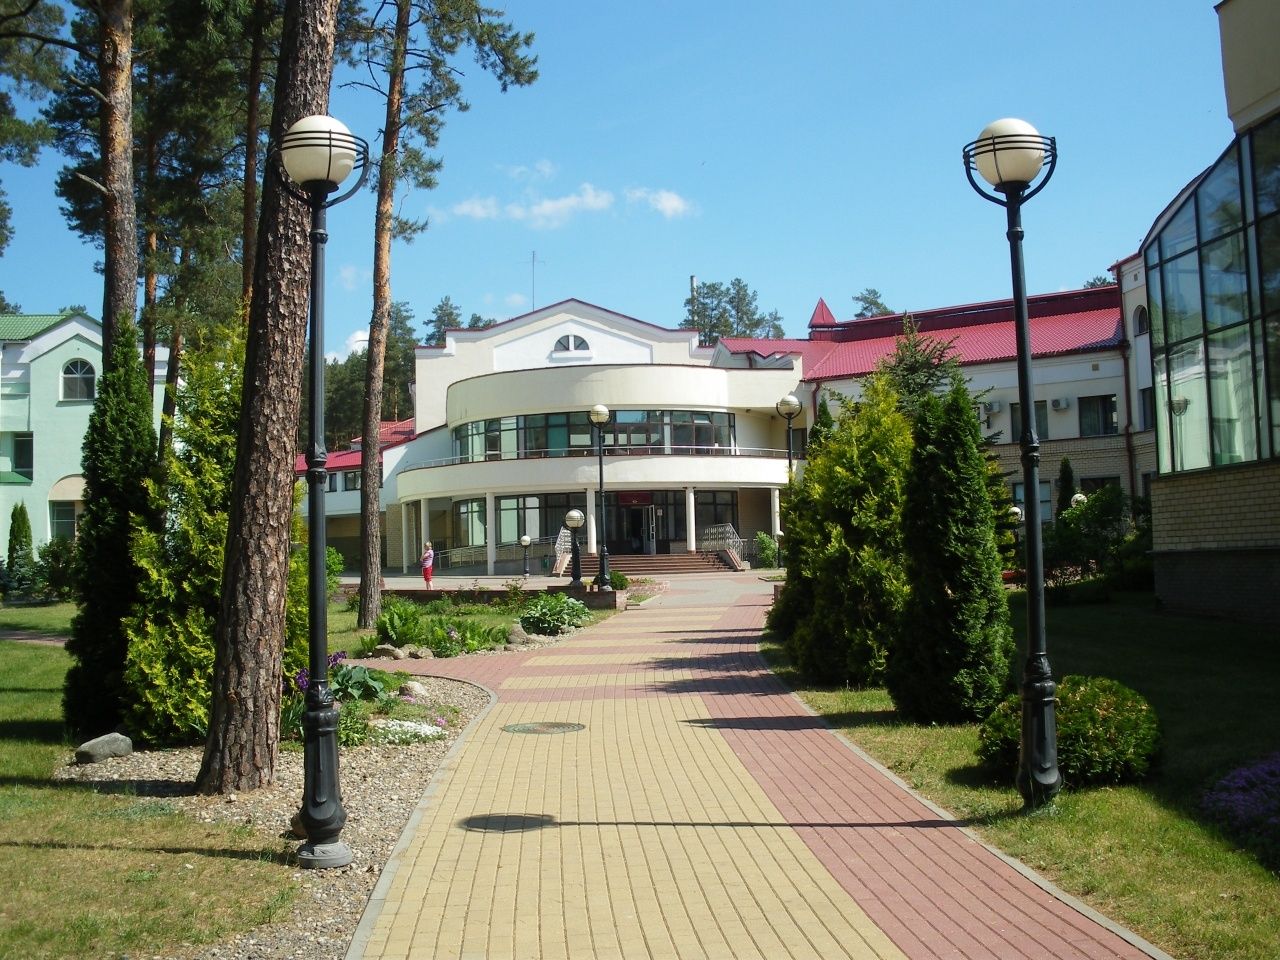 Санаторий "Ружанский", деревня Заполье